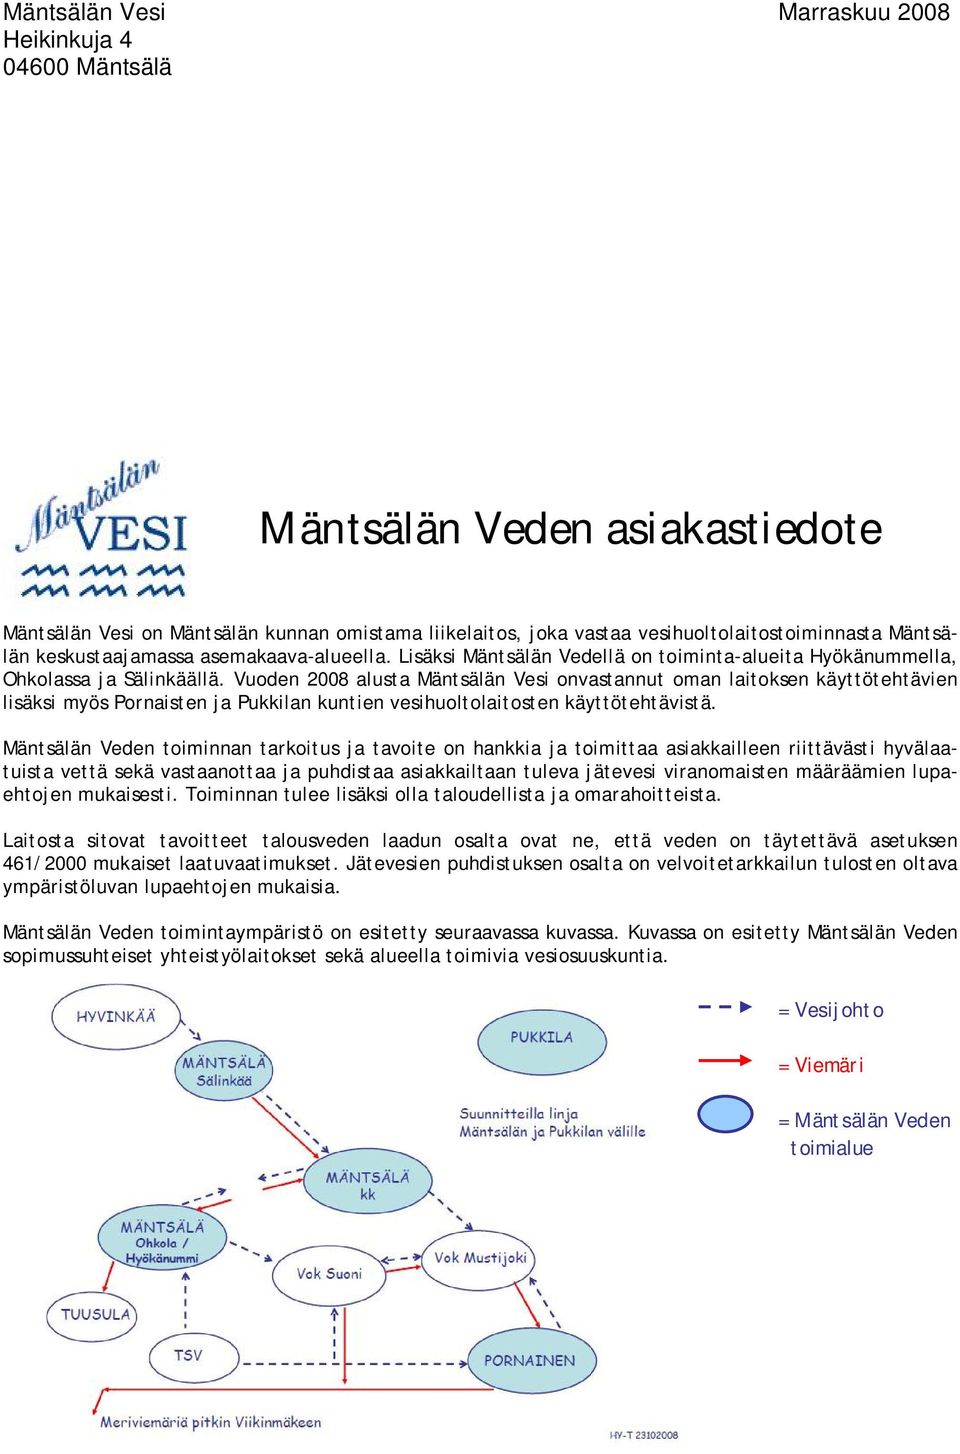 Vuoden 2008 alusta Mäntsälän Vesi onvastannut oman laitoksen käyttötehtävien lisäksi myös Pornaisten ja Pukkilan kuntien vesihuoltolaitosten käyttötehtävistä.